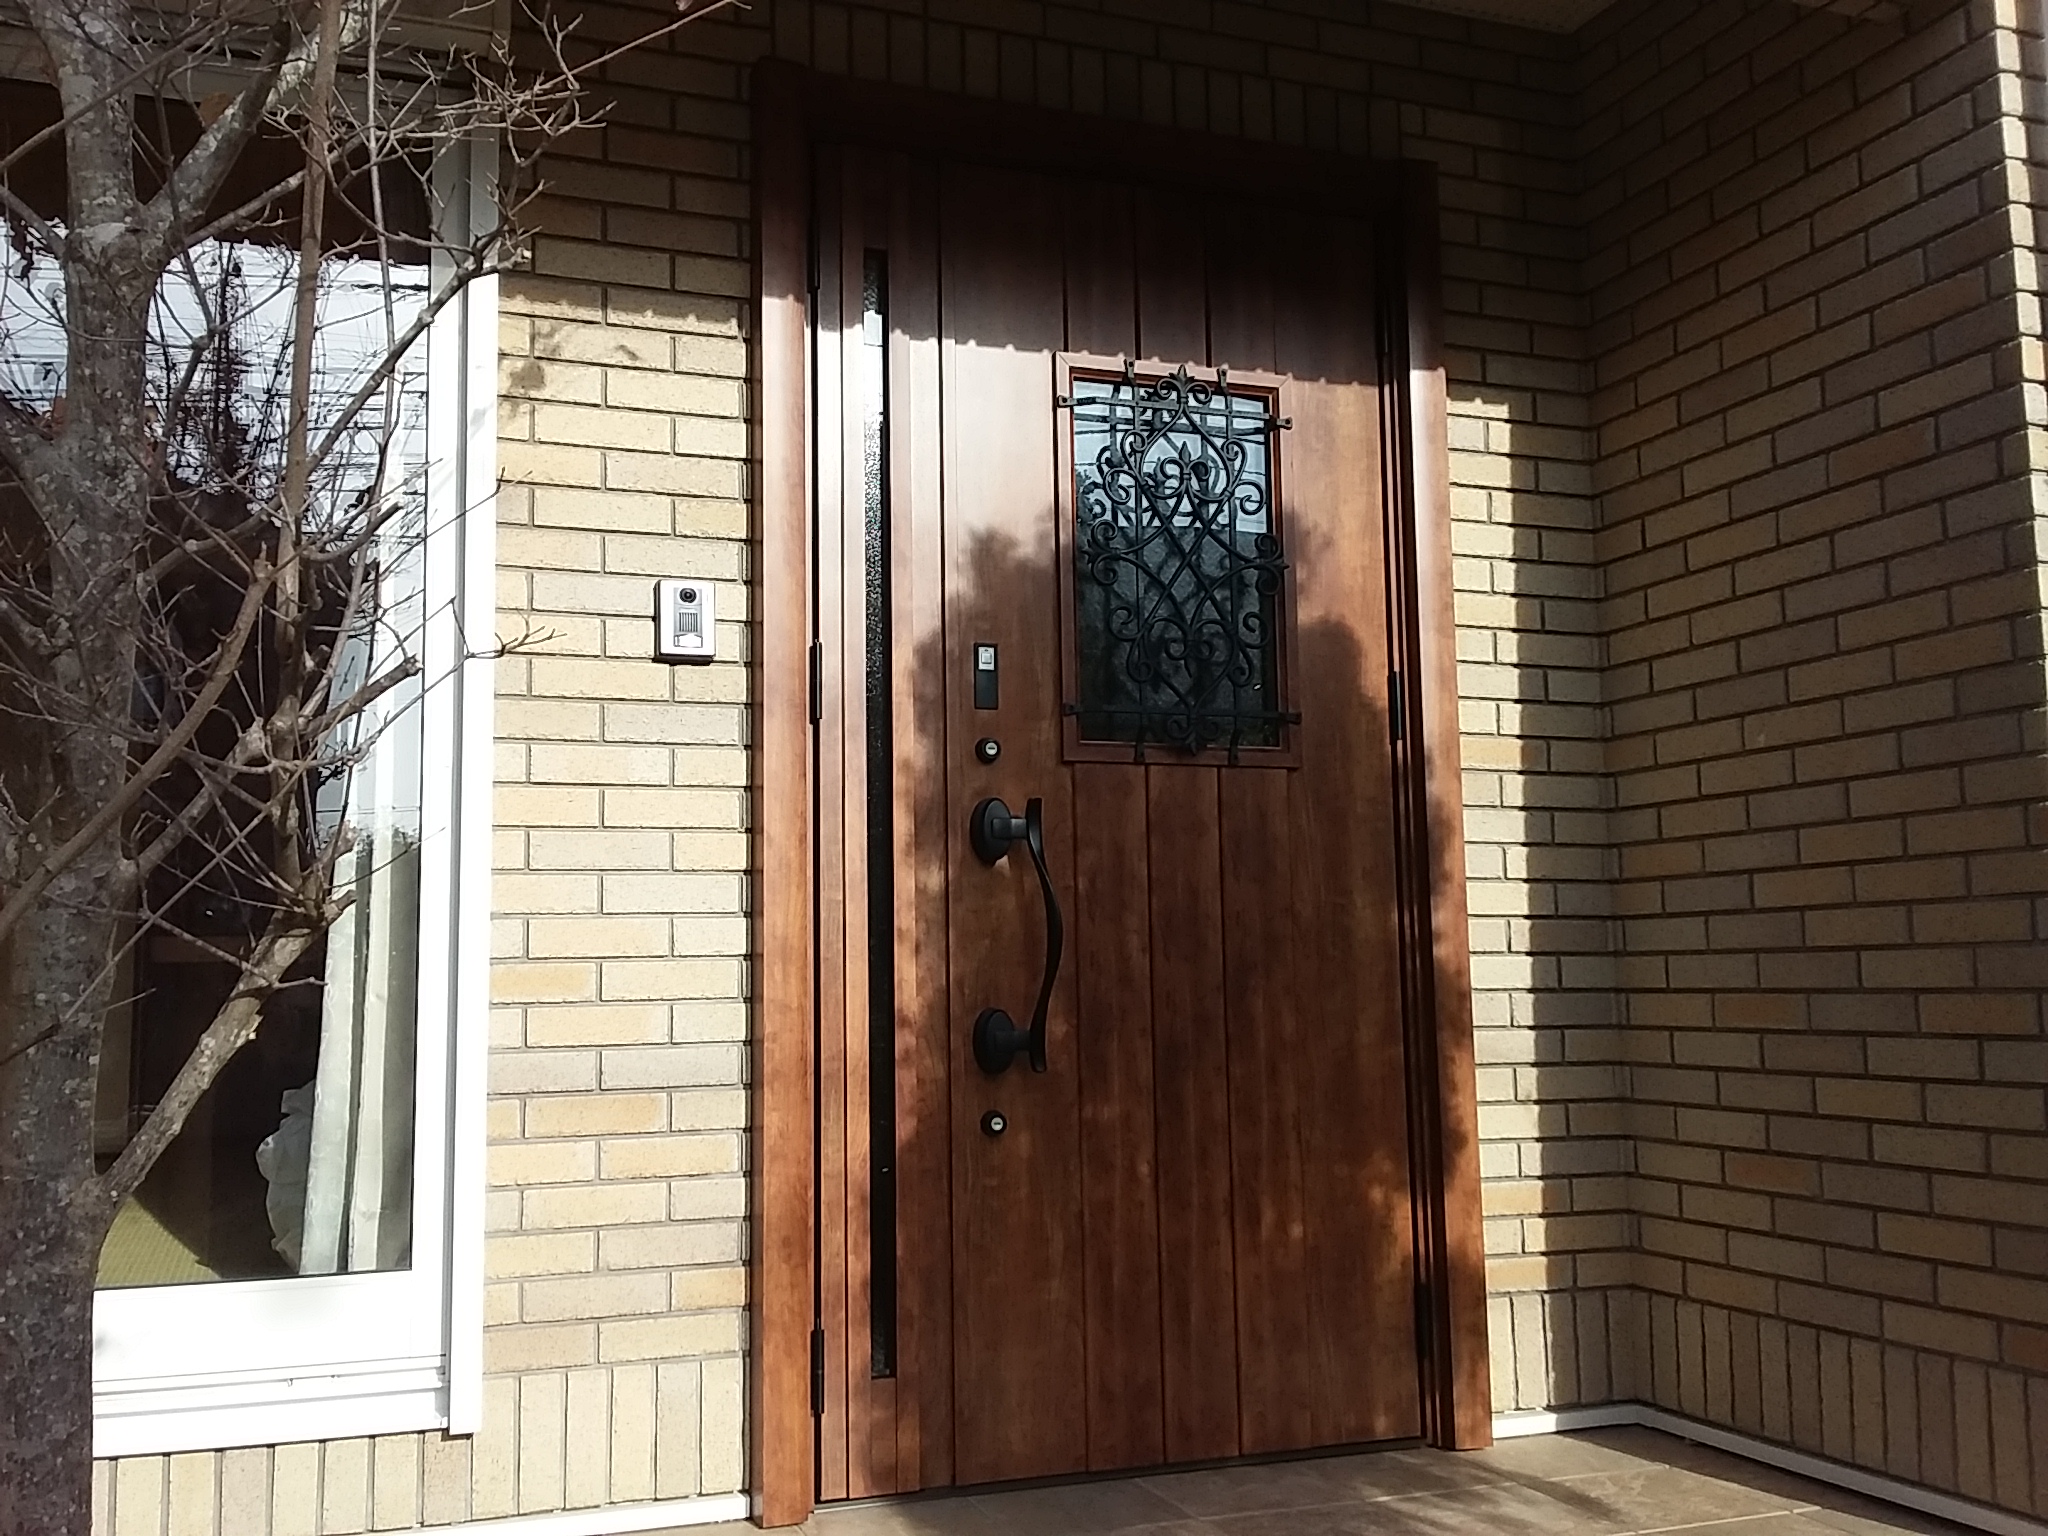 レンガ調の外壁に合う木目のドアにリフォーム【LIXILリシェントD41型】埼玉県吉川市の工事事例玄関ドアのリフォームなら玄関ドアマイスターへ